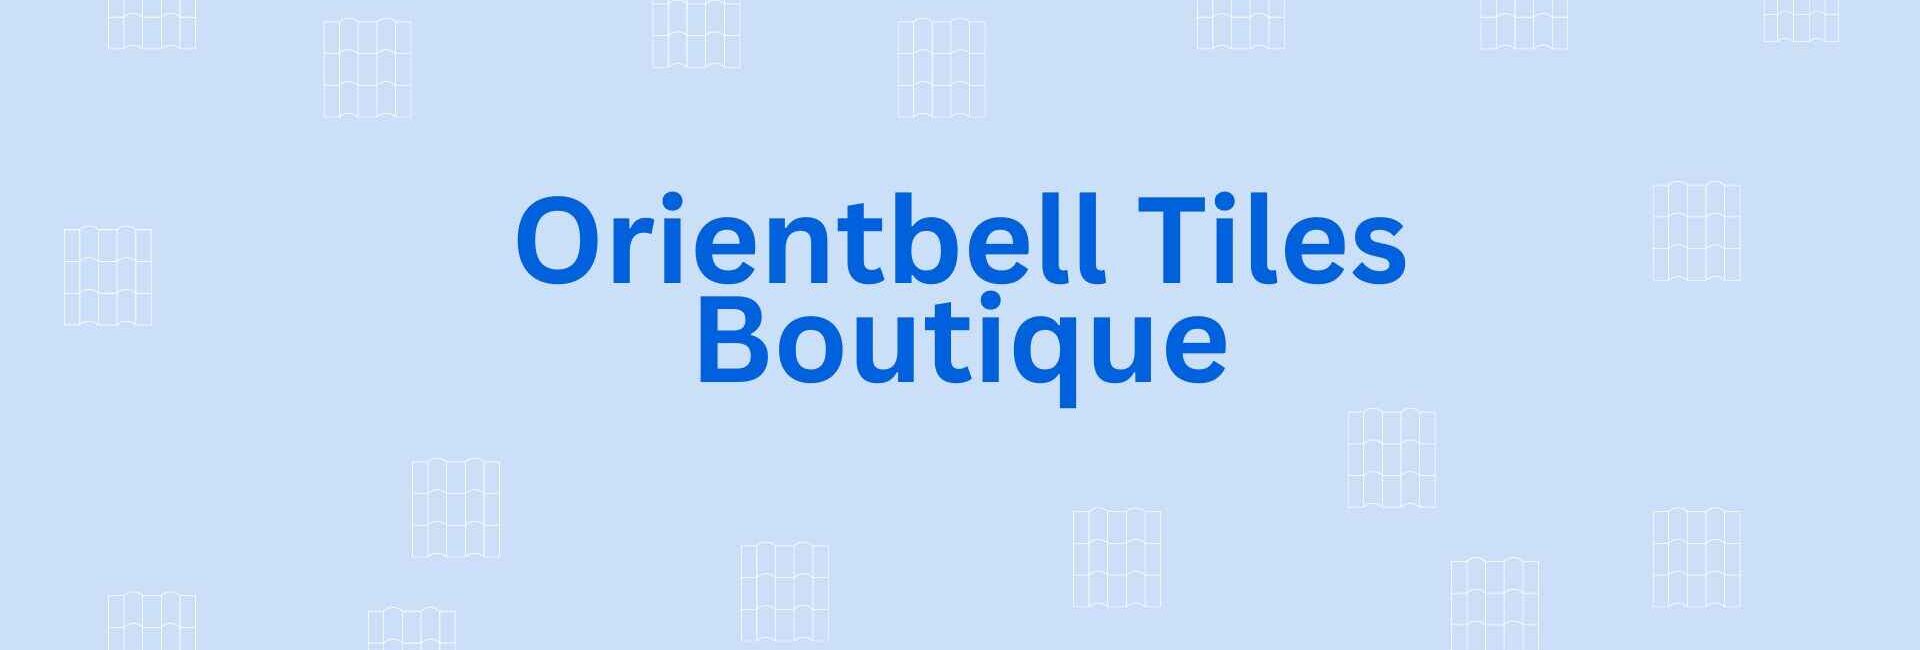 Orientbell Tiles Boutique - Flooring Dealer in Noida